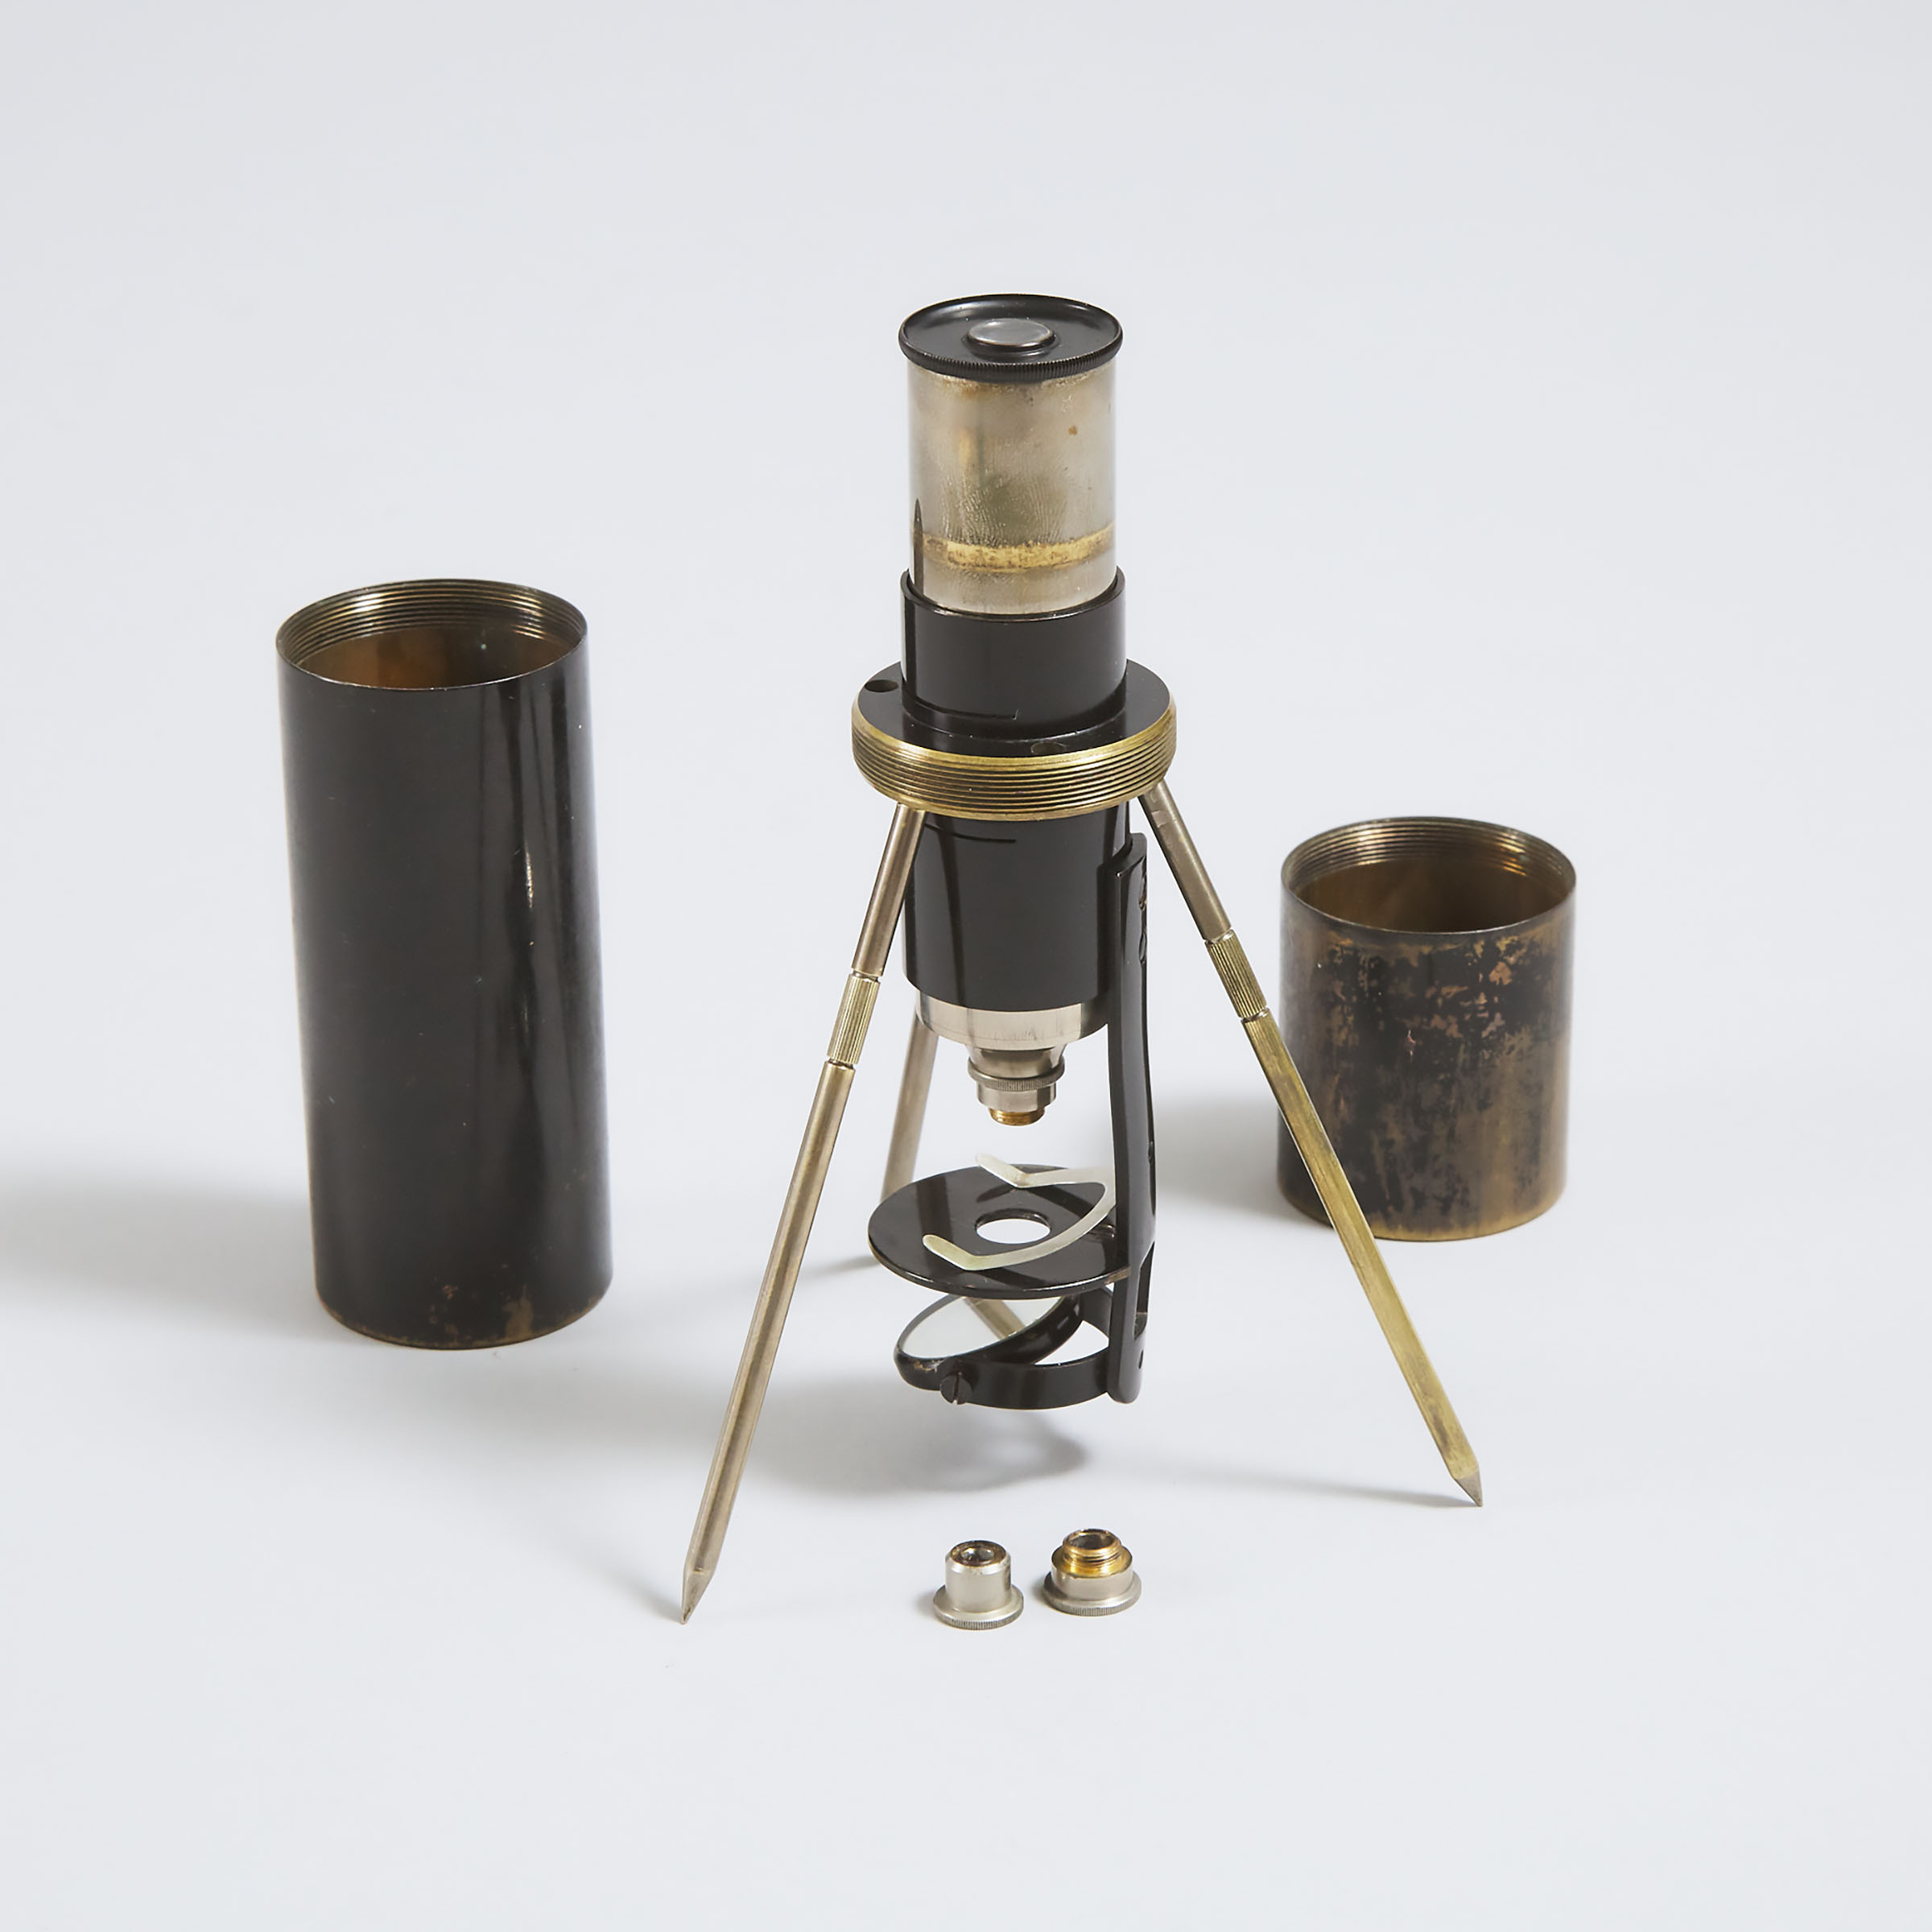 German Compound 'Junior' Field Microscope, Spindler & Hoyer, Göttingen, c.1925